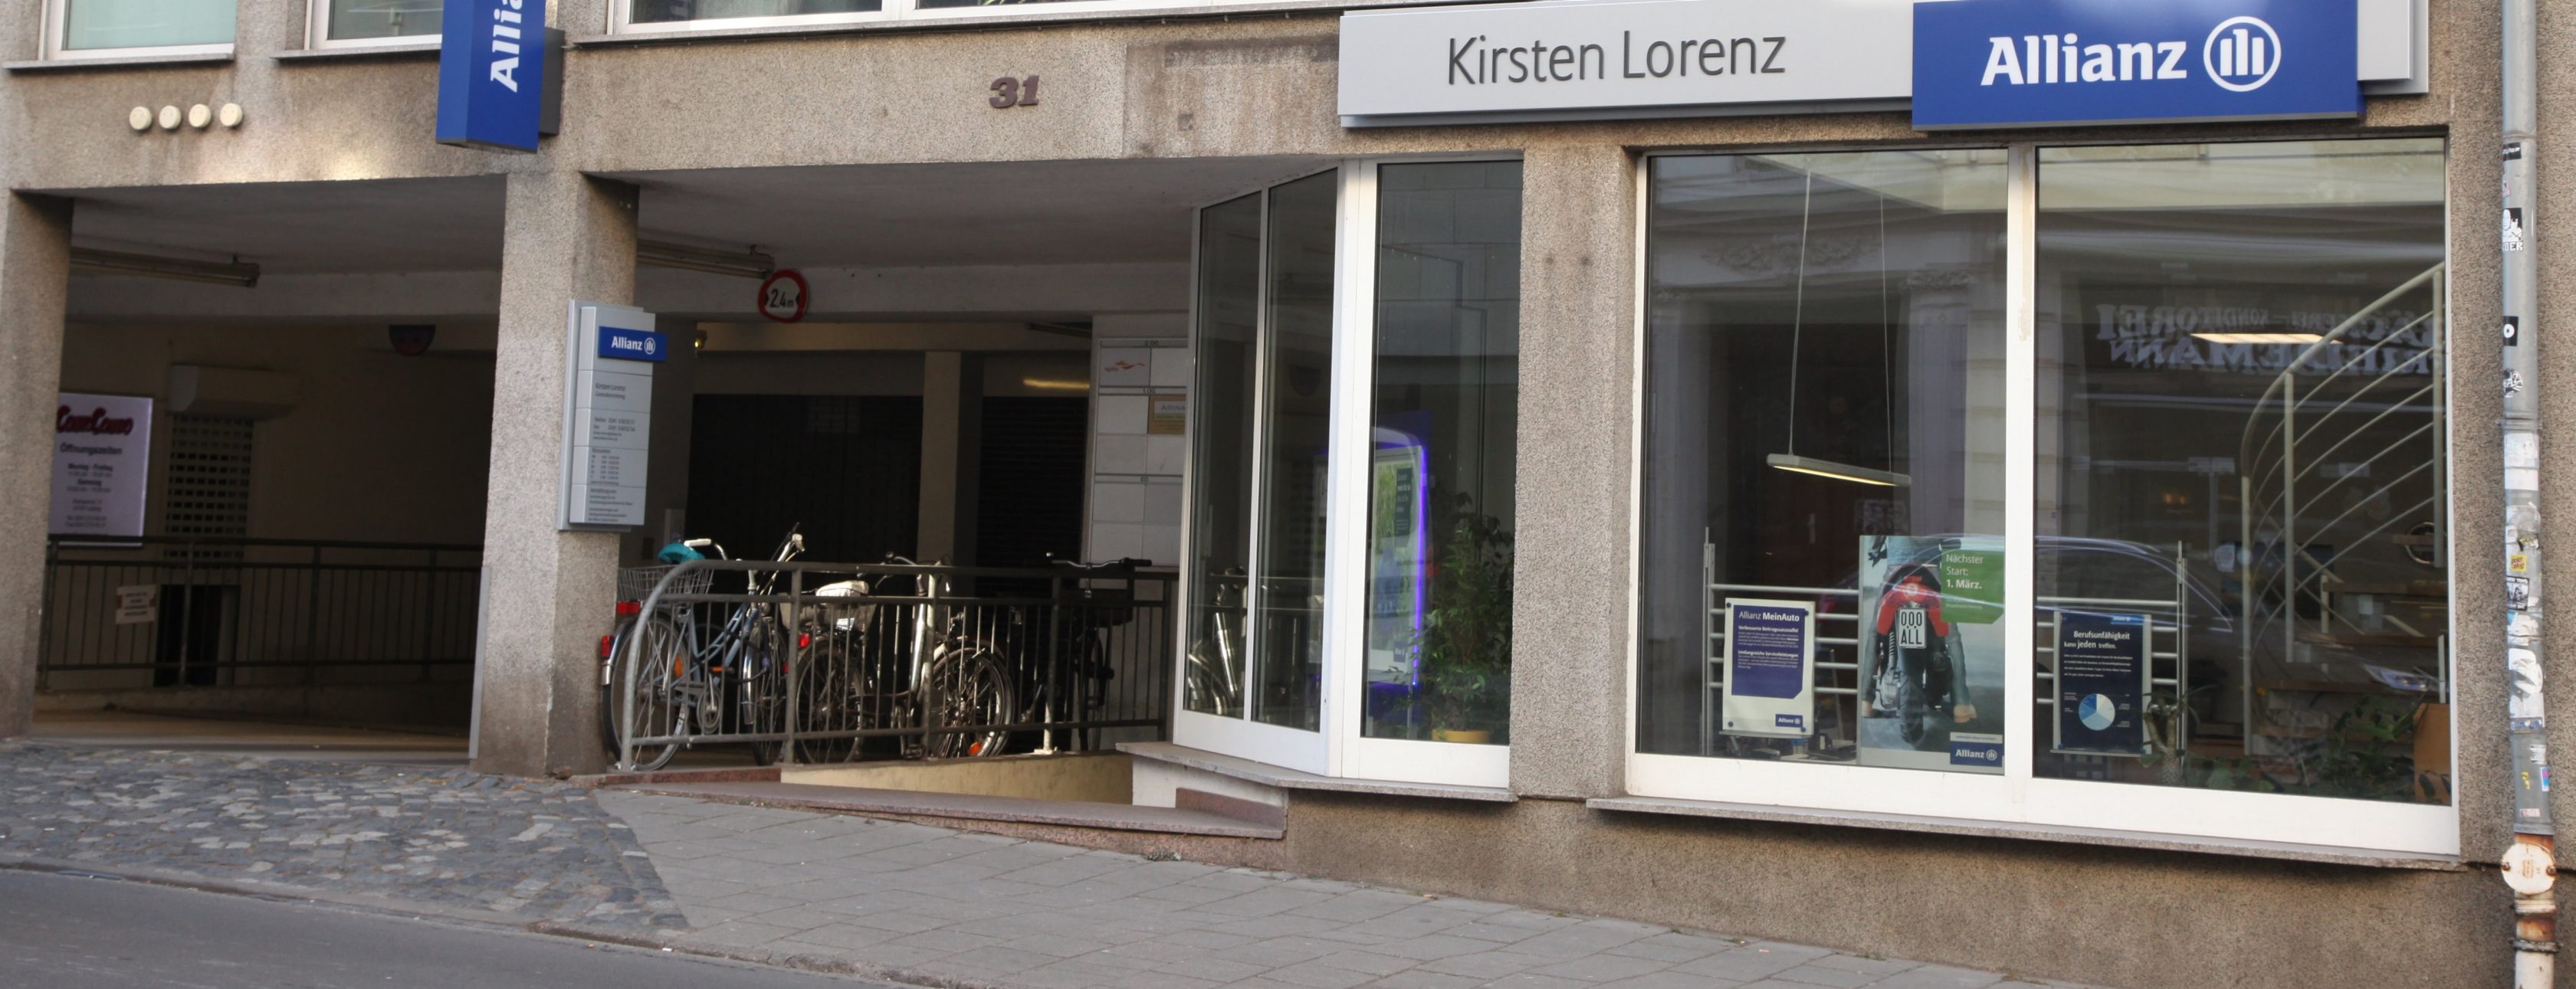 Allianz Versicherung Kirsten Lorenz Leipzig - Agenturstandort